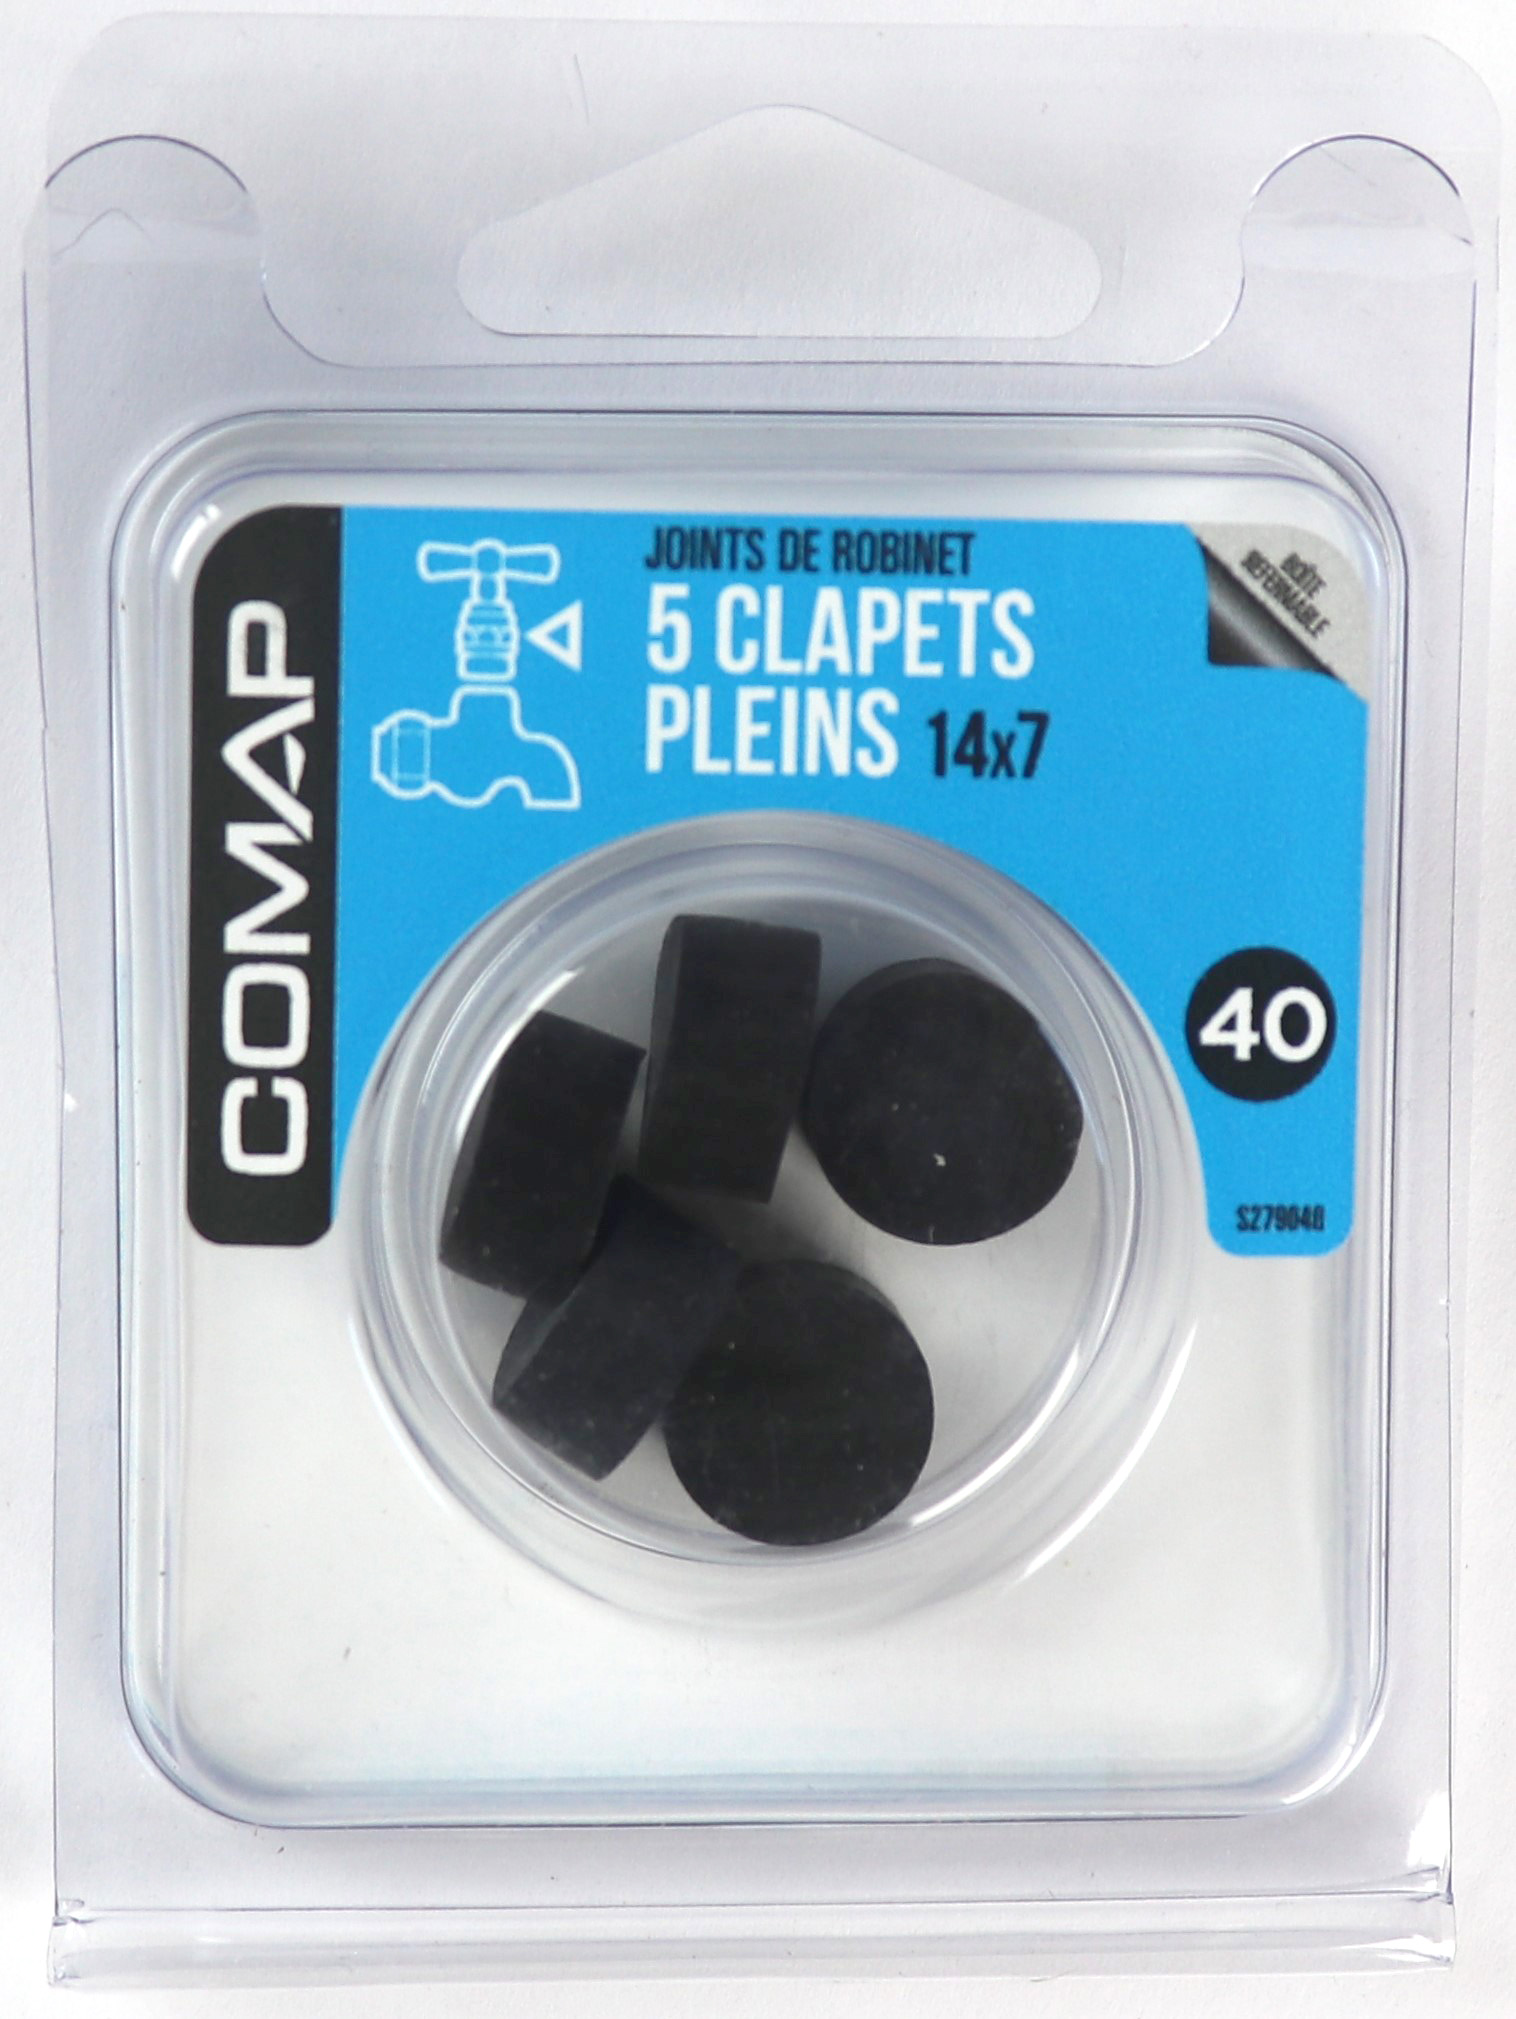 5 Clapets pleins 14x7 - COMAP